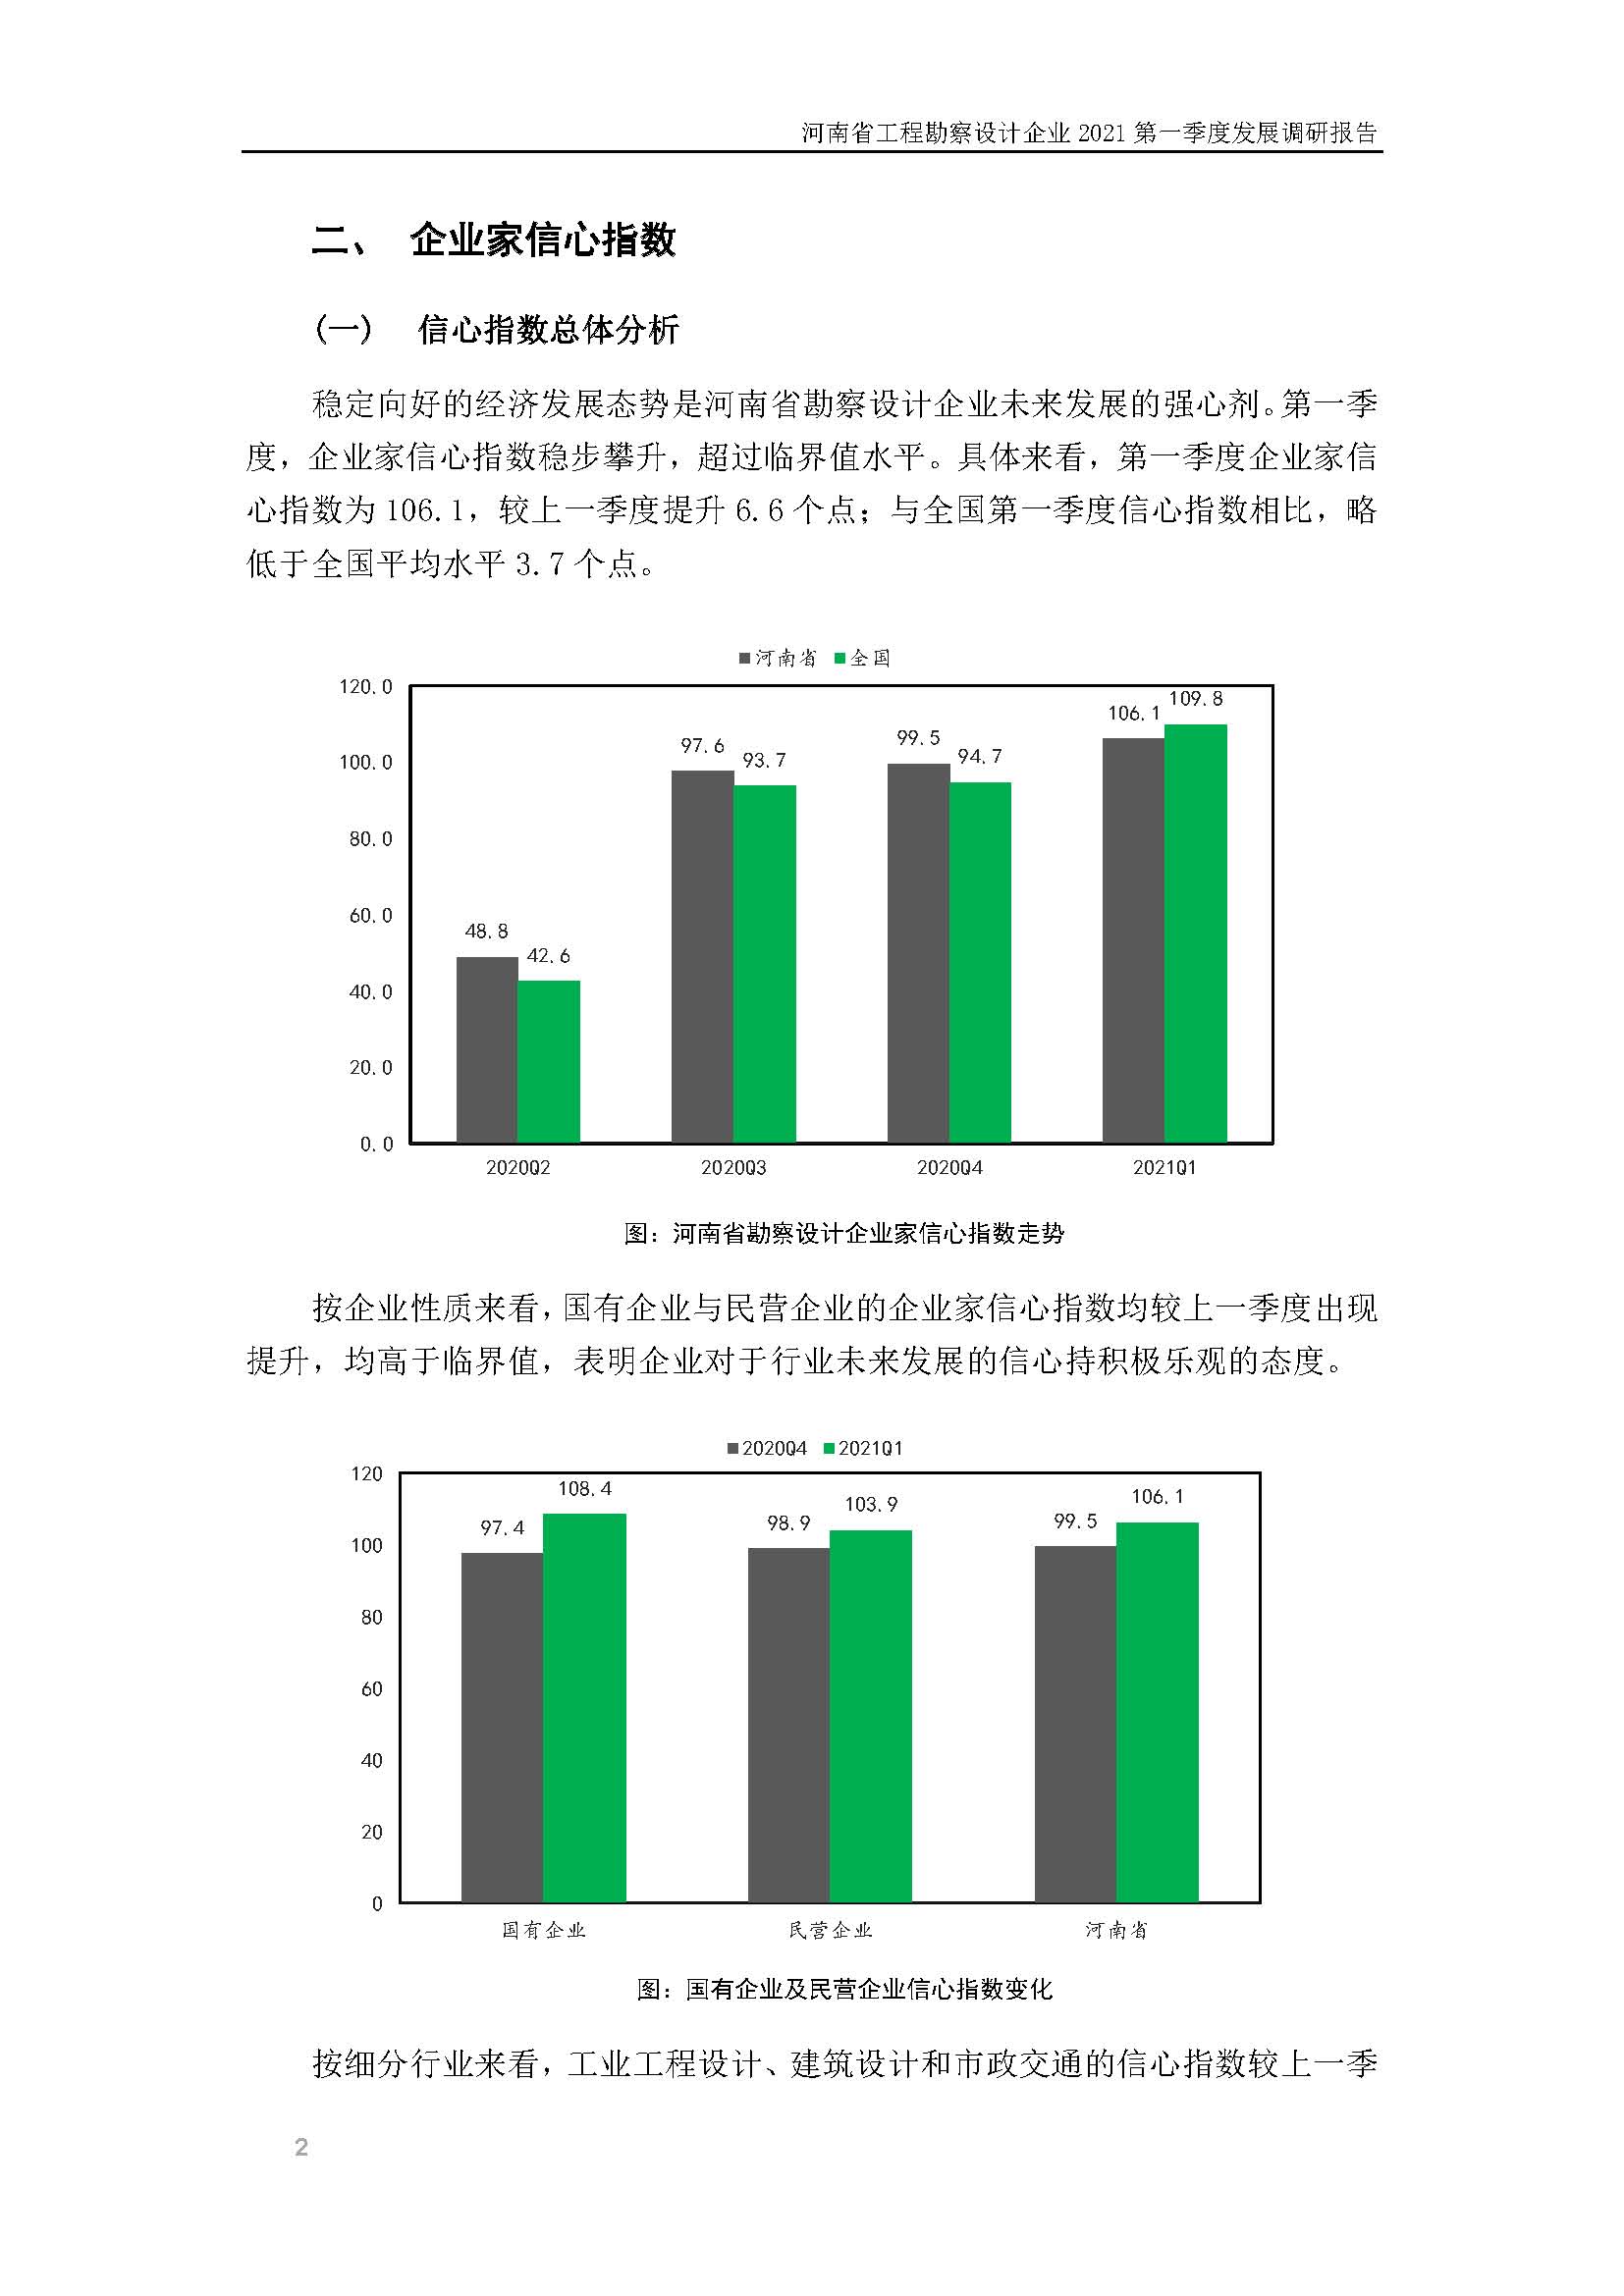 河南省工程勘察设计企业2021第一季度发展调研报告二_页面_3.jpg